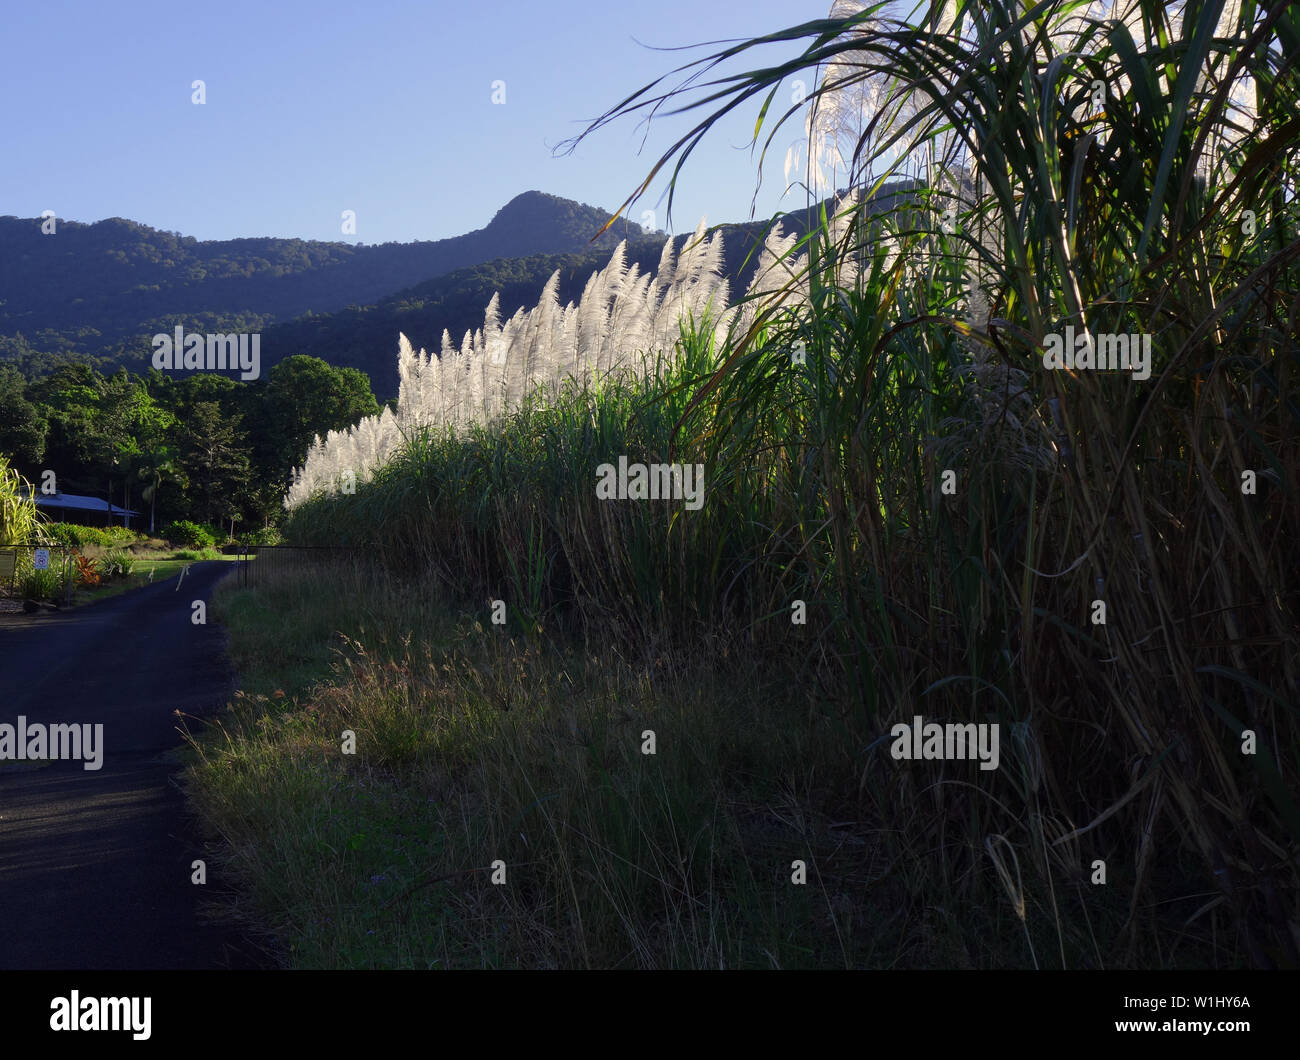 Pêche à la route passe à travers les champs de canne à sucre, près de Cairns, Queensland, Australie. Pas de PR Banque D'Images